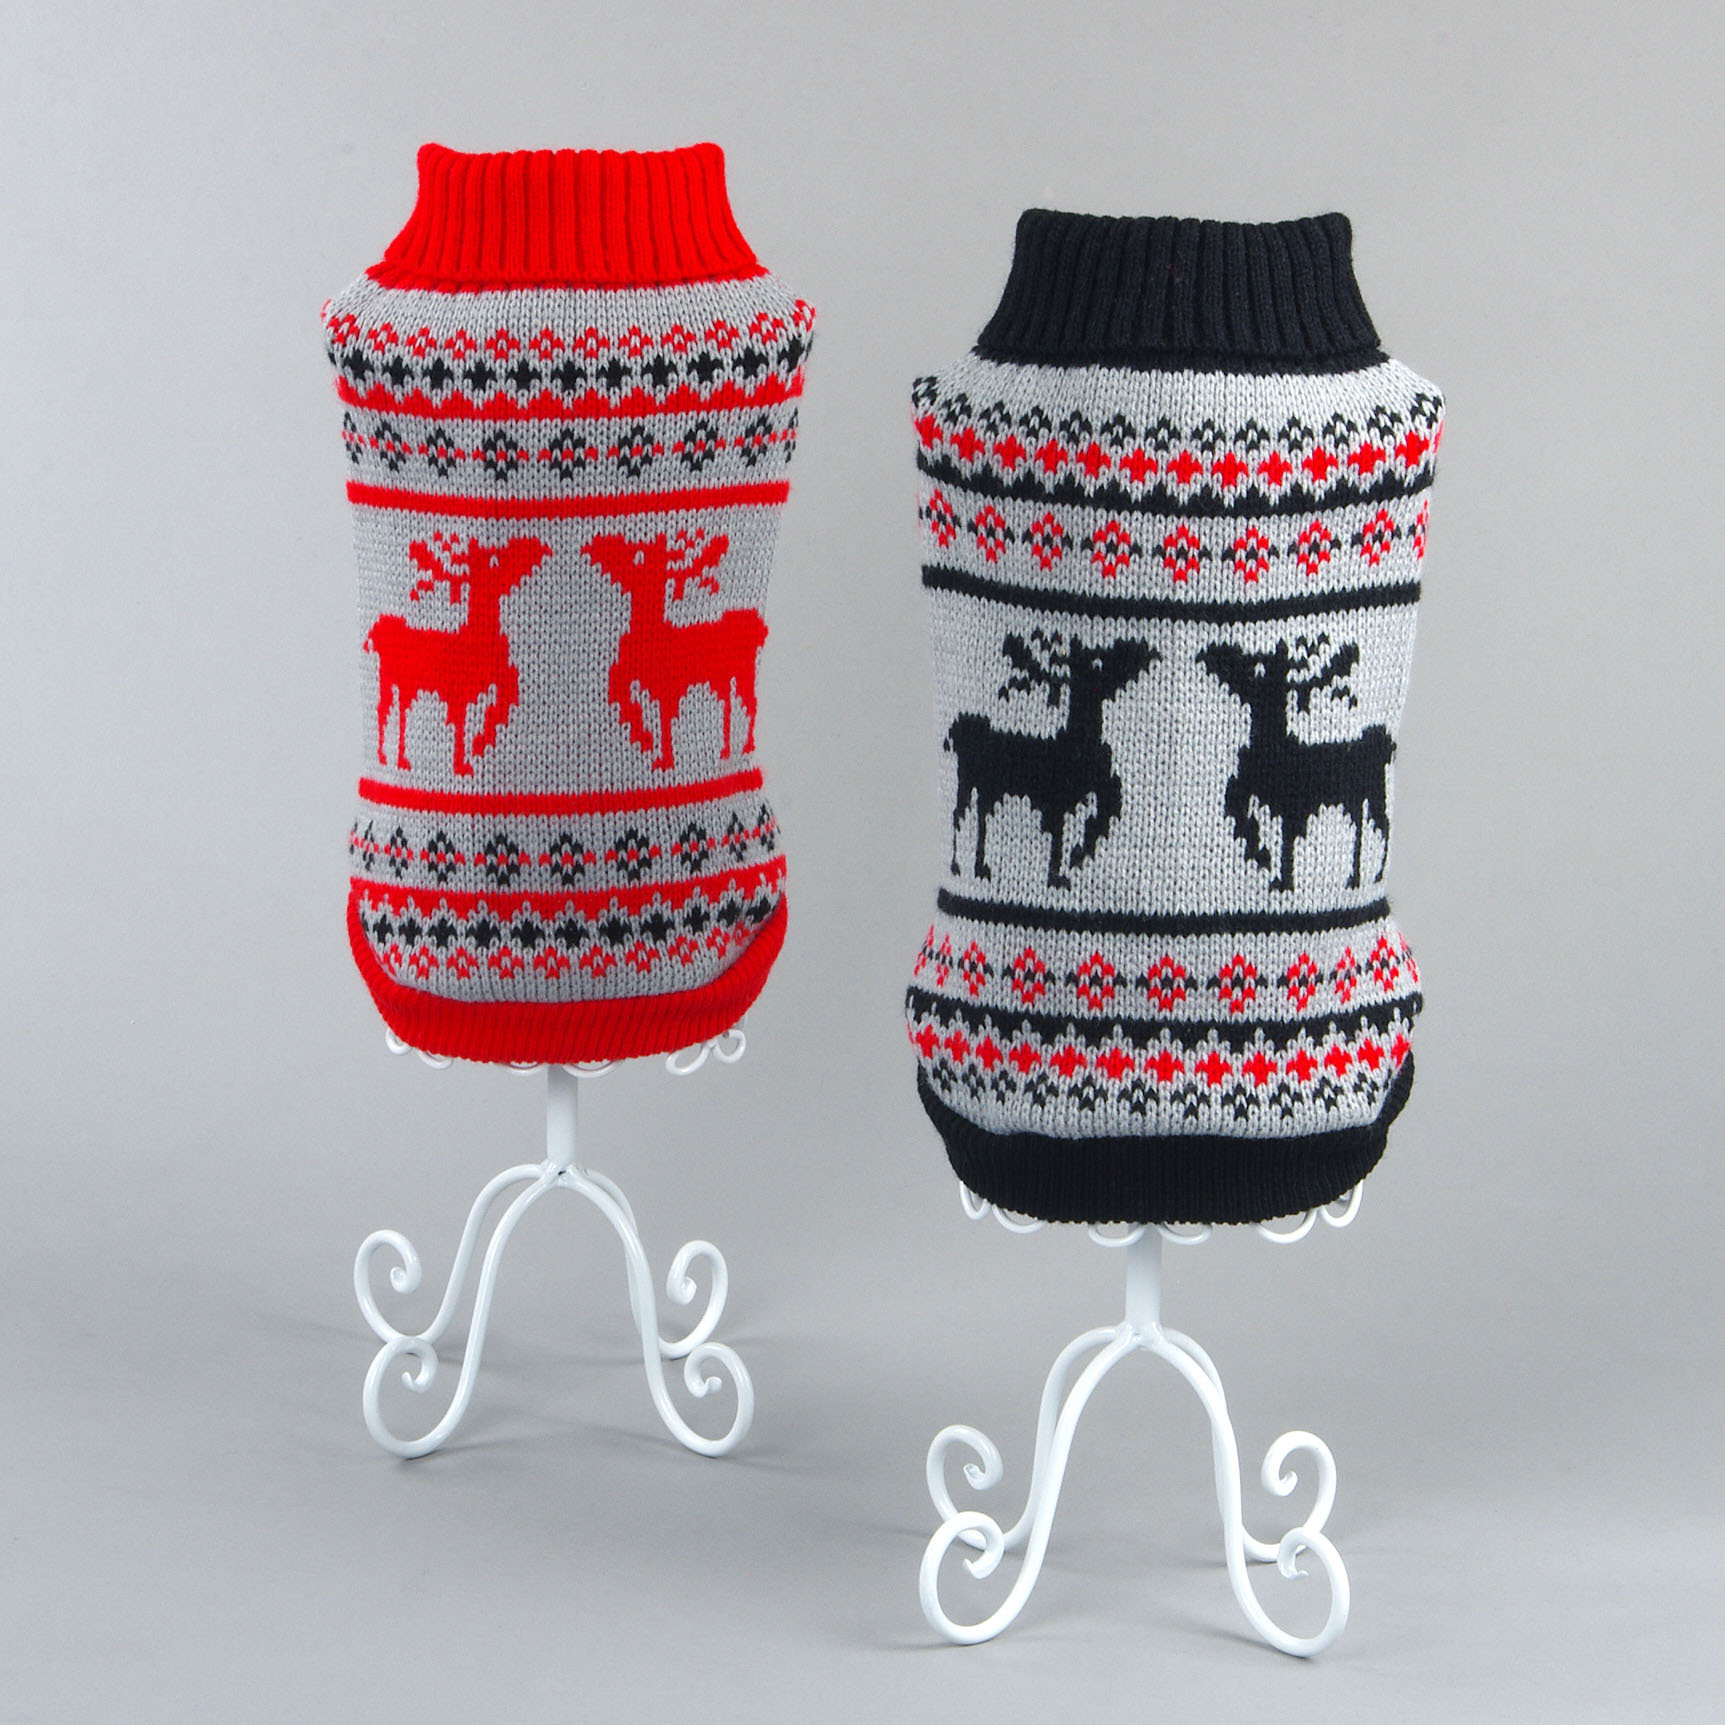 宠物毛衣圣诞可爱麋鹿图案猫咪服饰加厚保暖舒适针织狗狗毛衣服装图